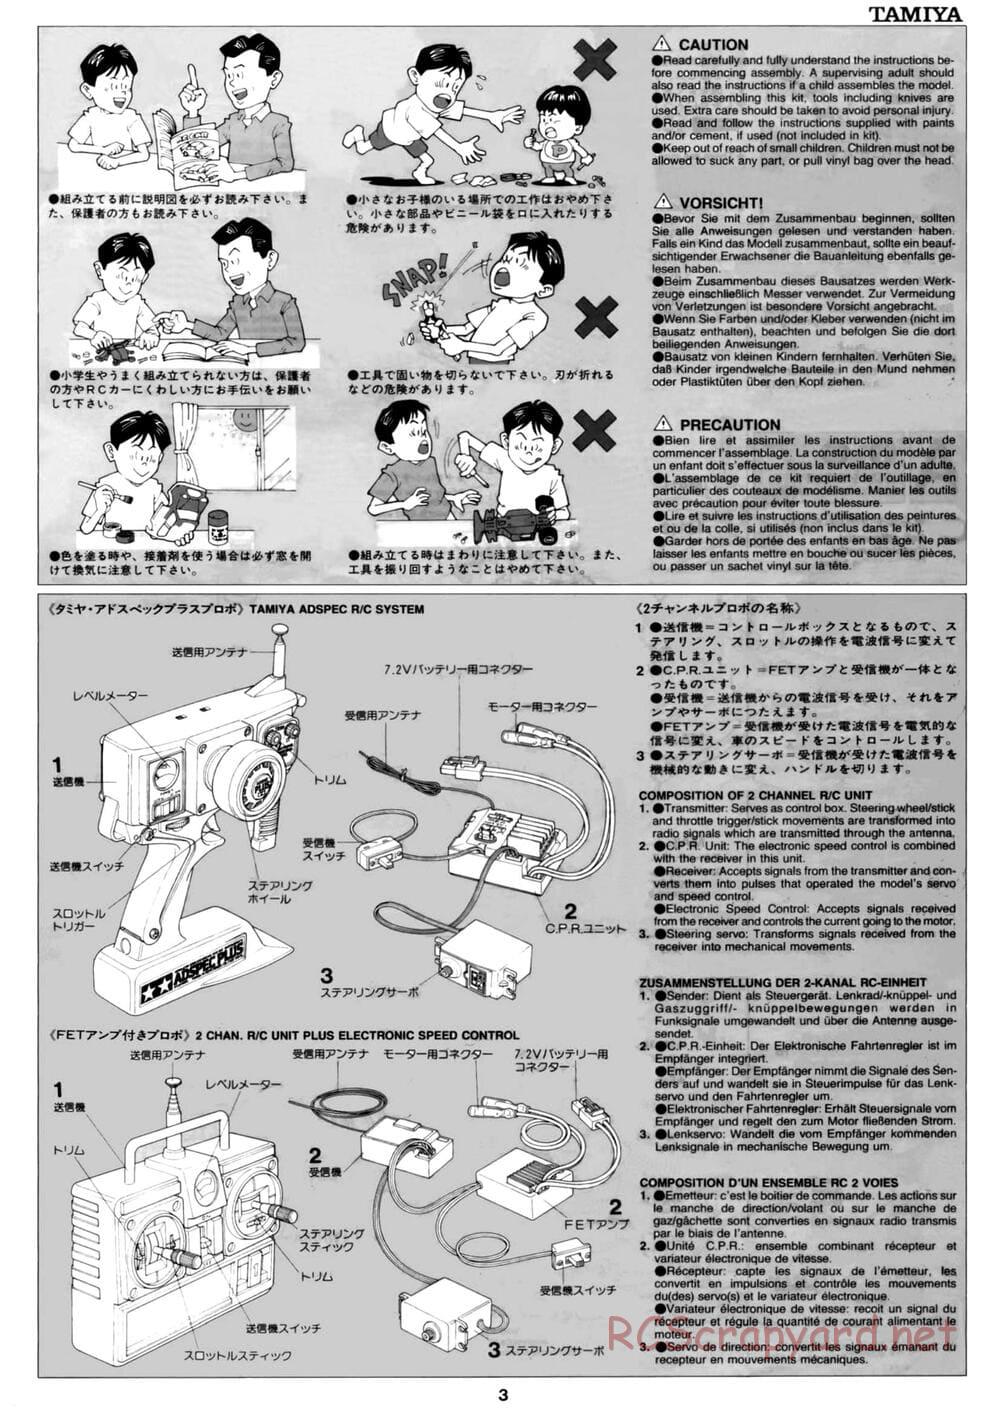 Tamiya - David Jun TA03F Pro Chassis - Manual - Page 3